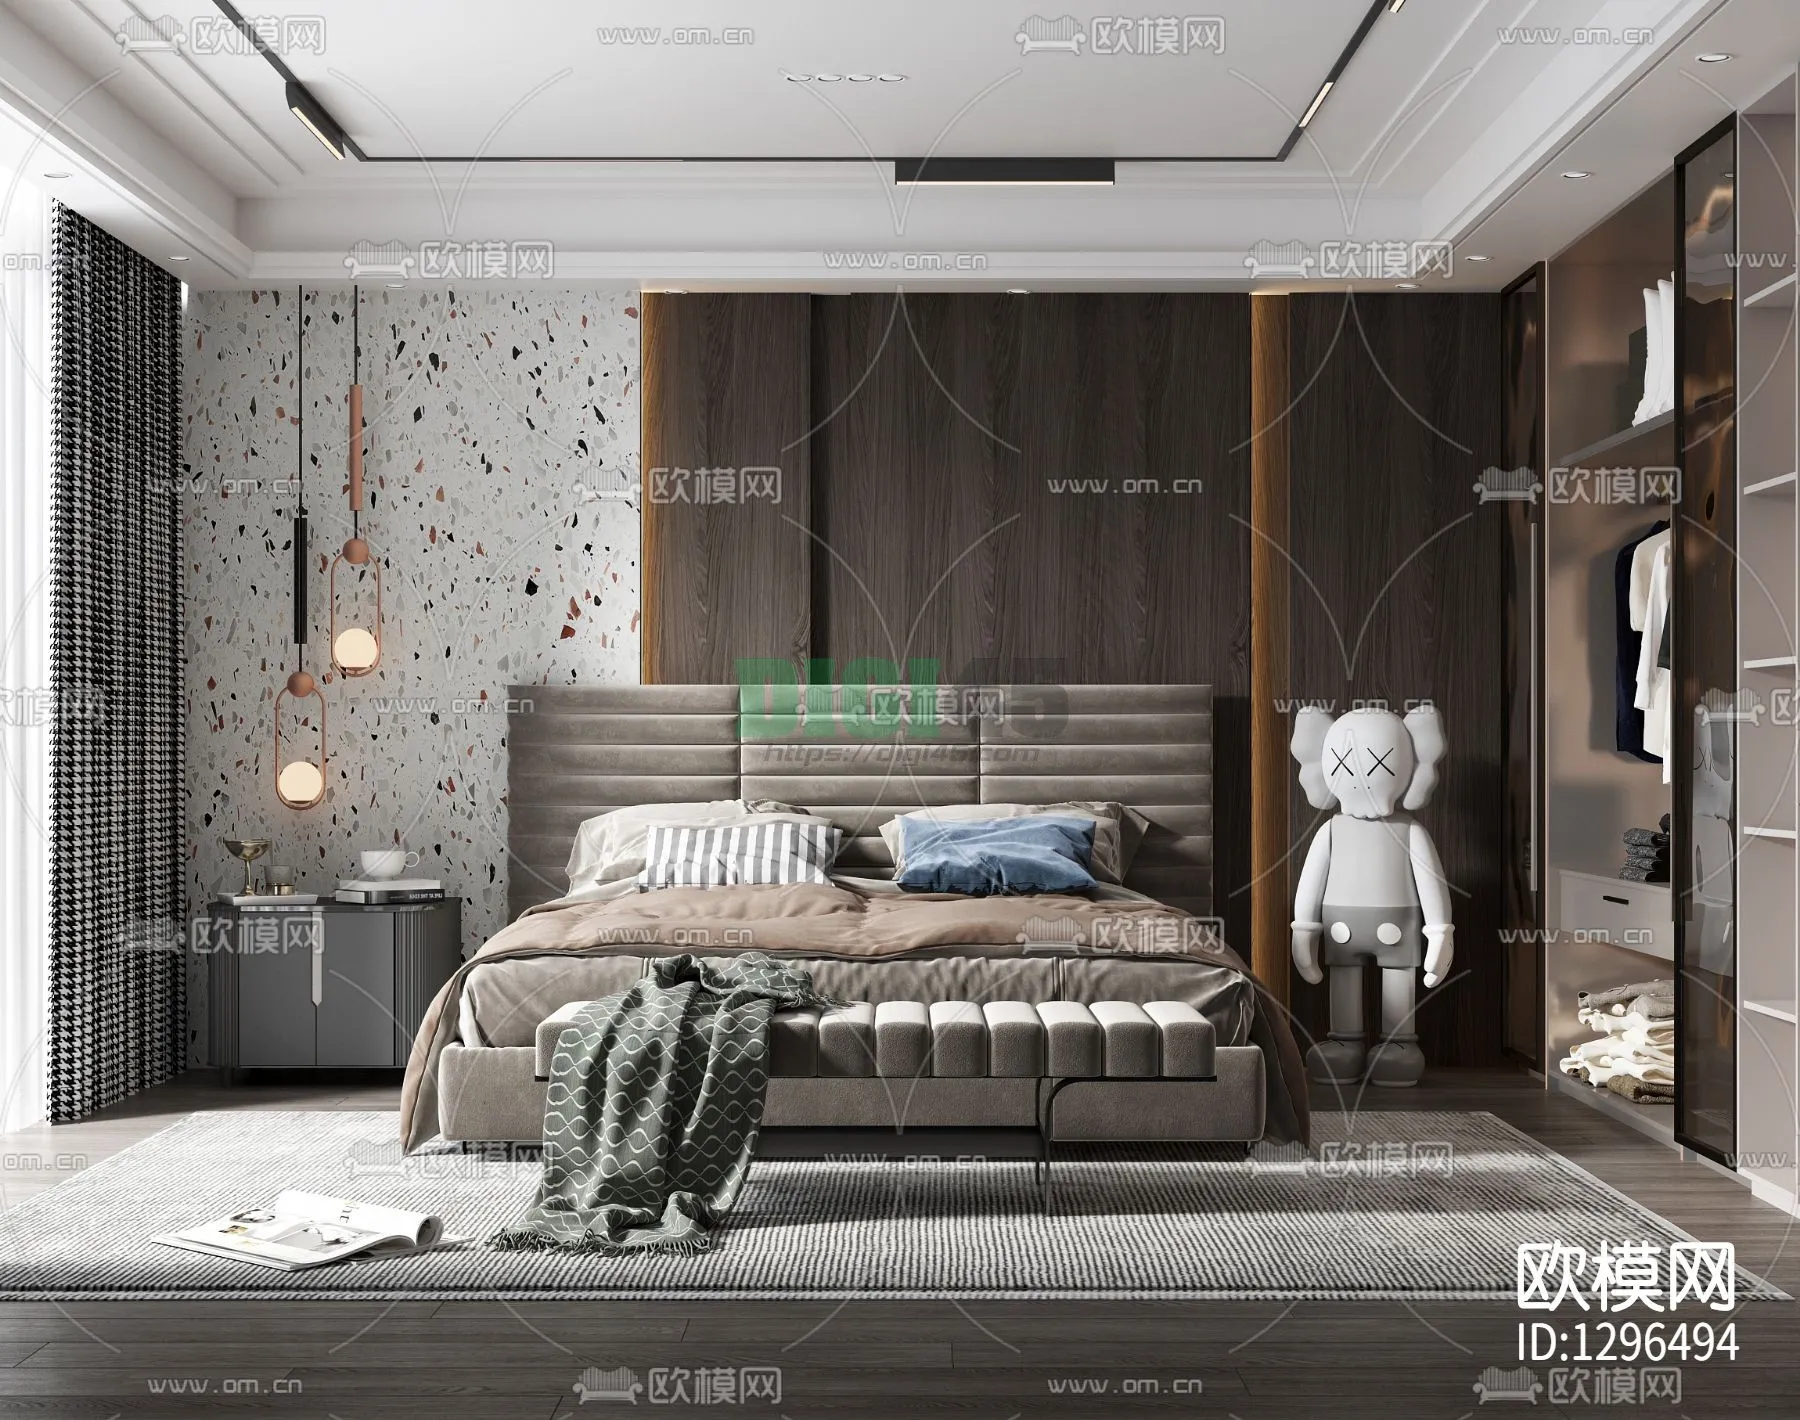 Bedroom 3D Scenes – 1136